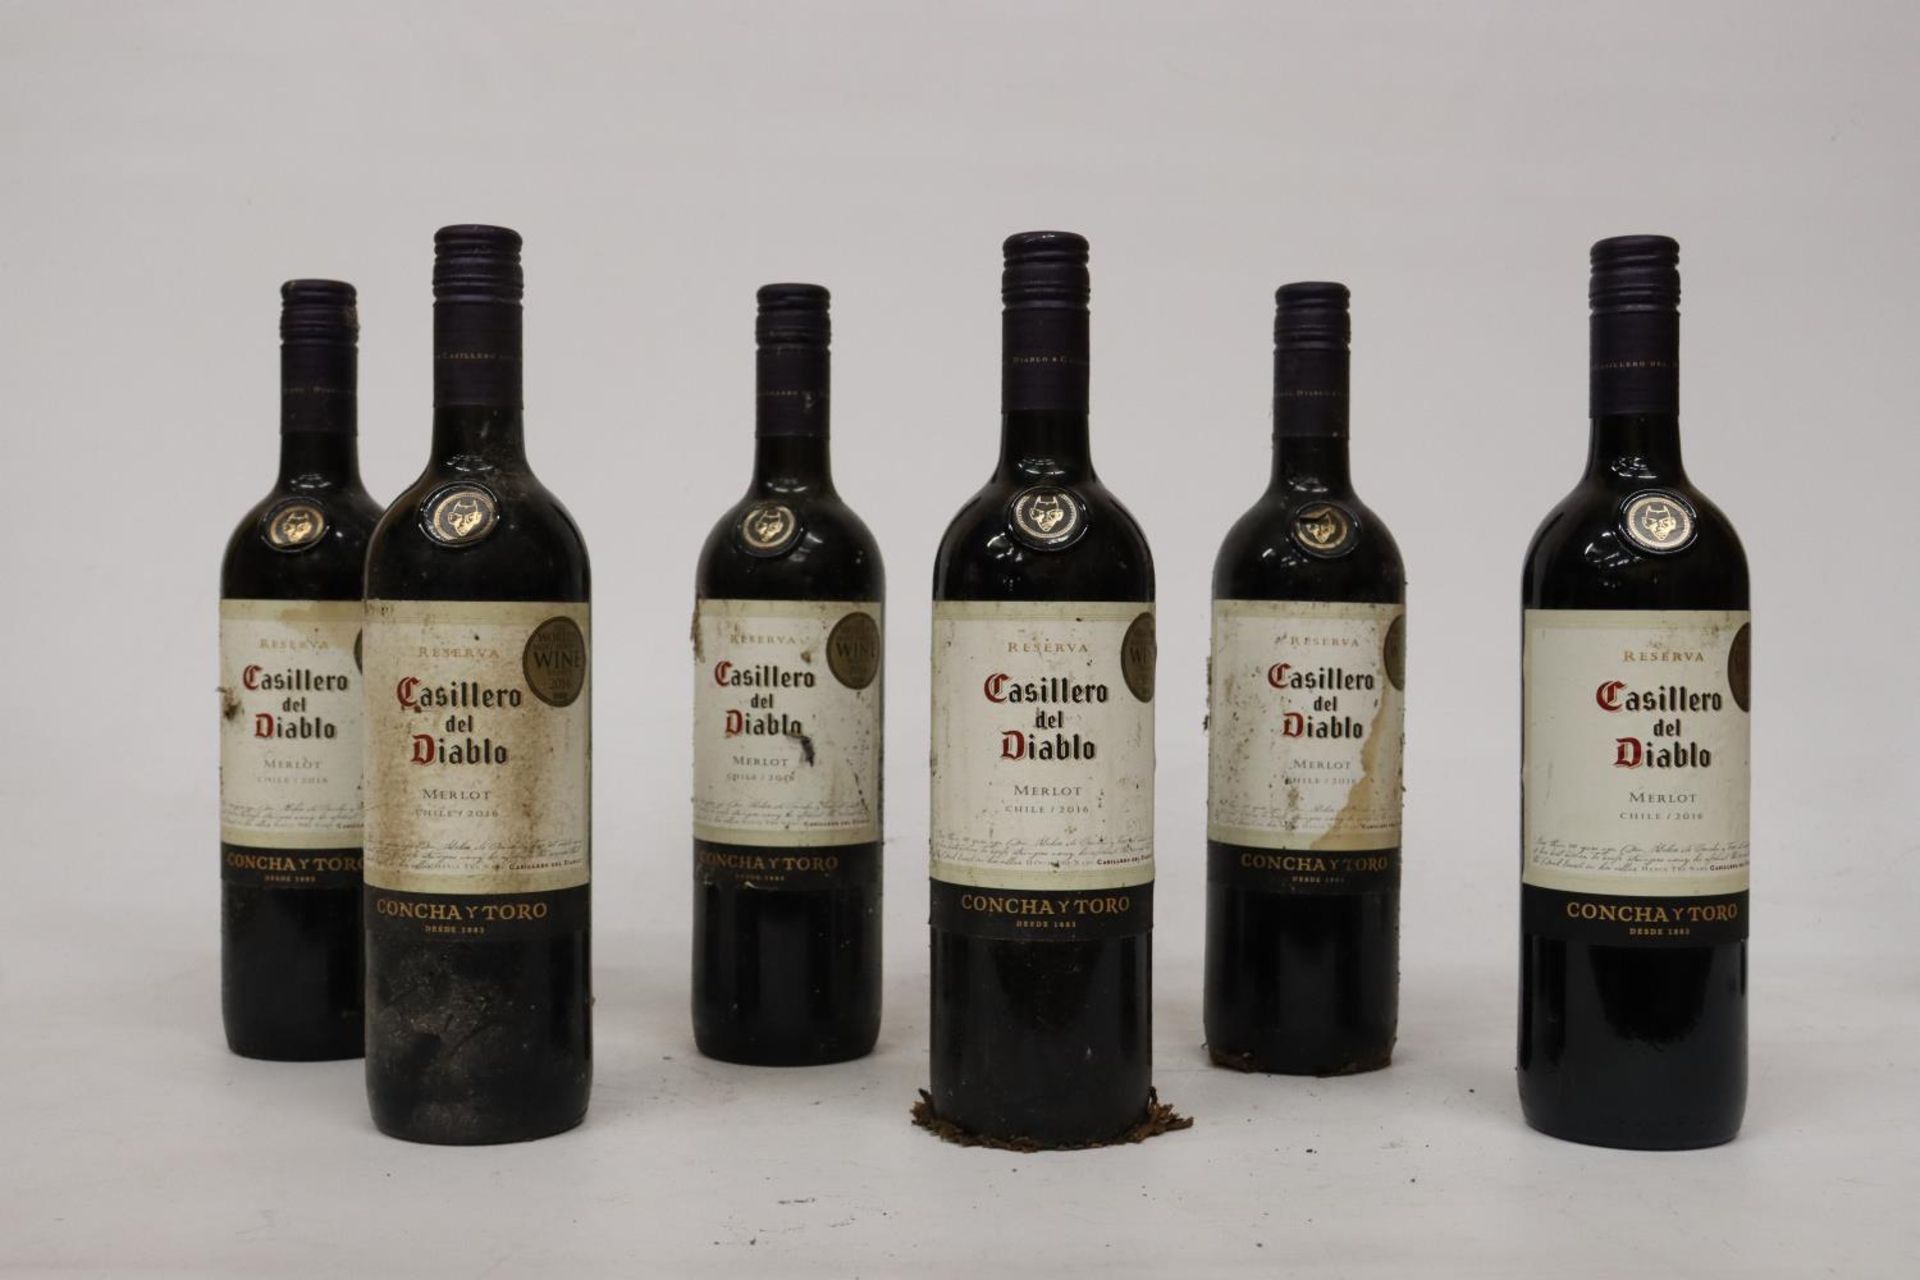 SIX BOTTLES OF RESERVA CASILLERO DEL DIABLO MERLOT RED WINE